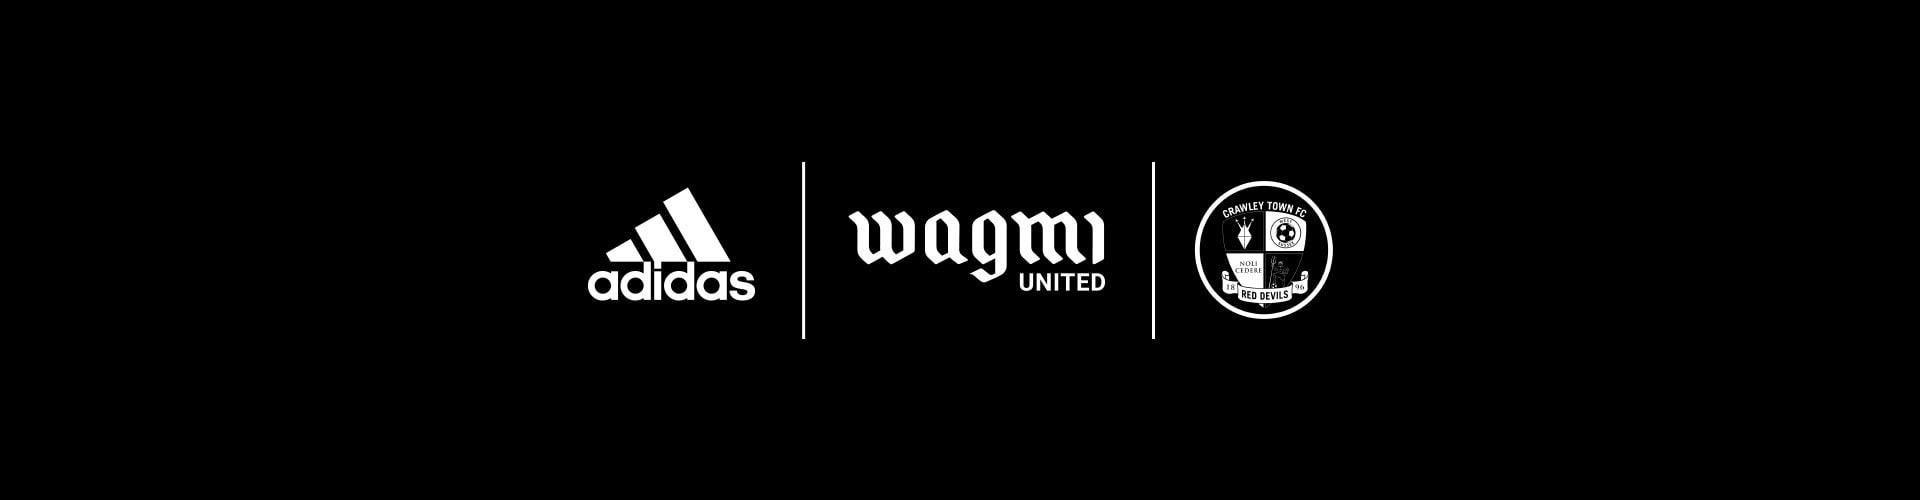 WAGMI United x adidas x Crawley Town logos